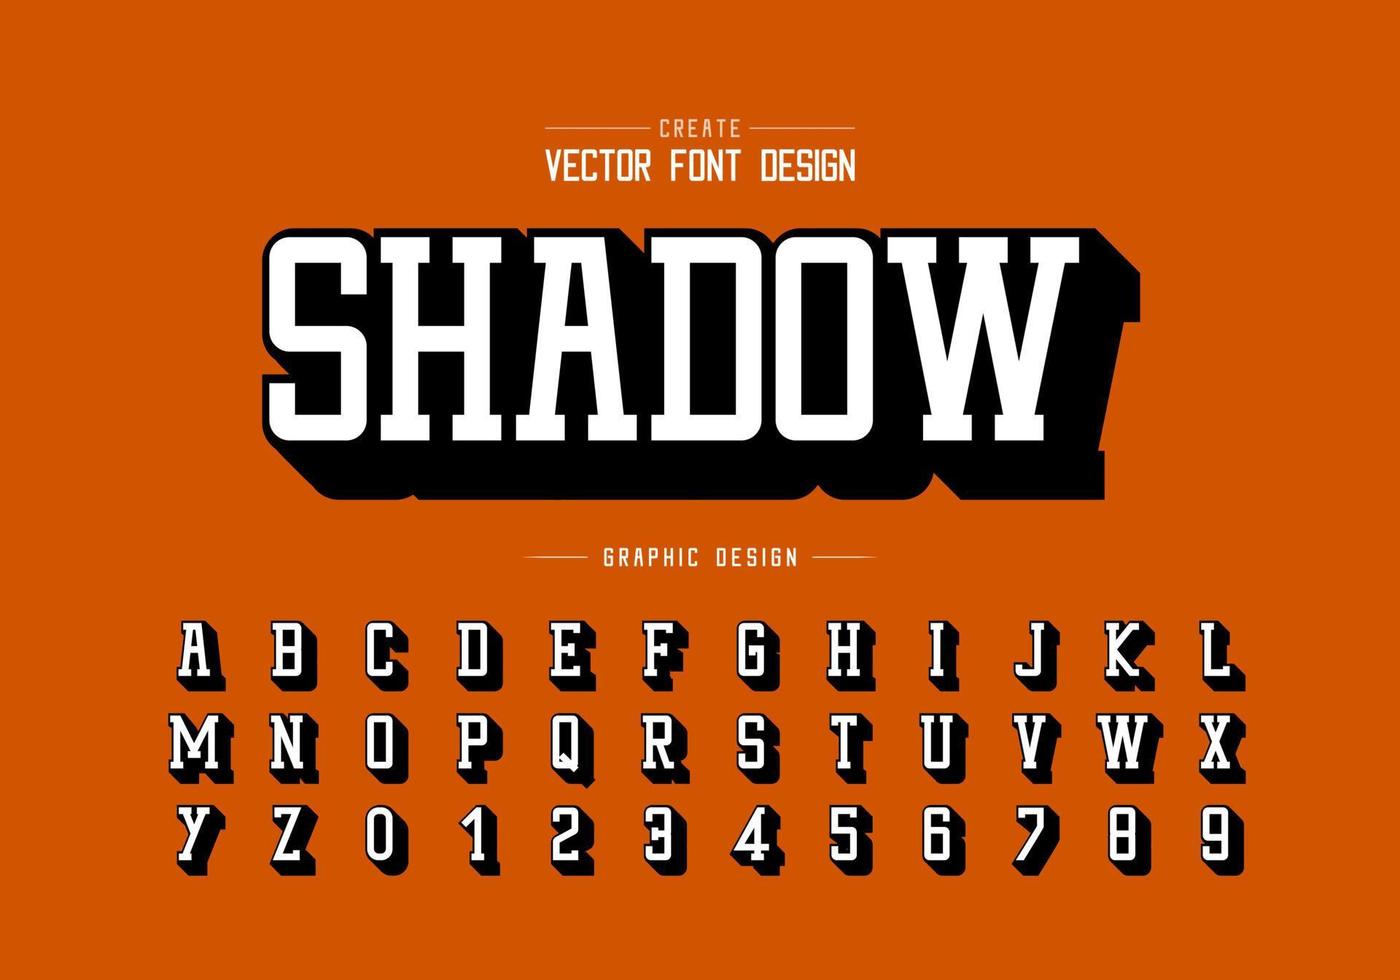 fuente de sombra y vector alfabético, tipografía y diseño de números, texto gráfico en el fondo